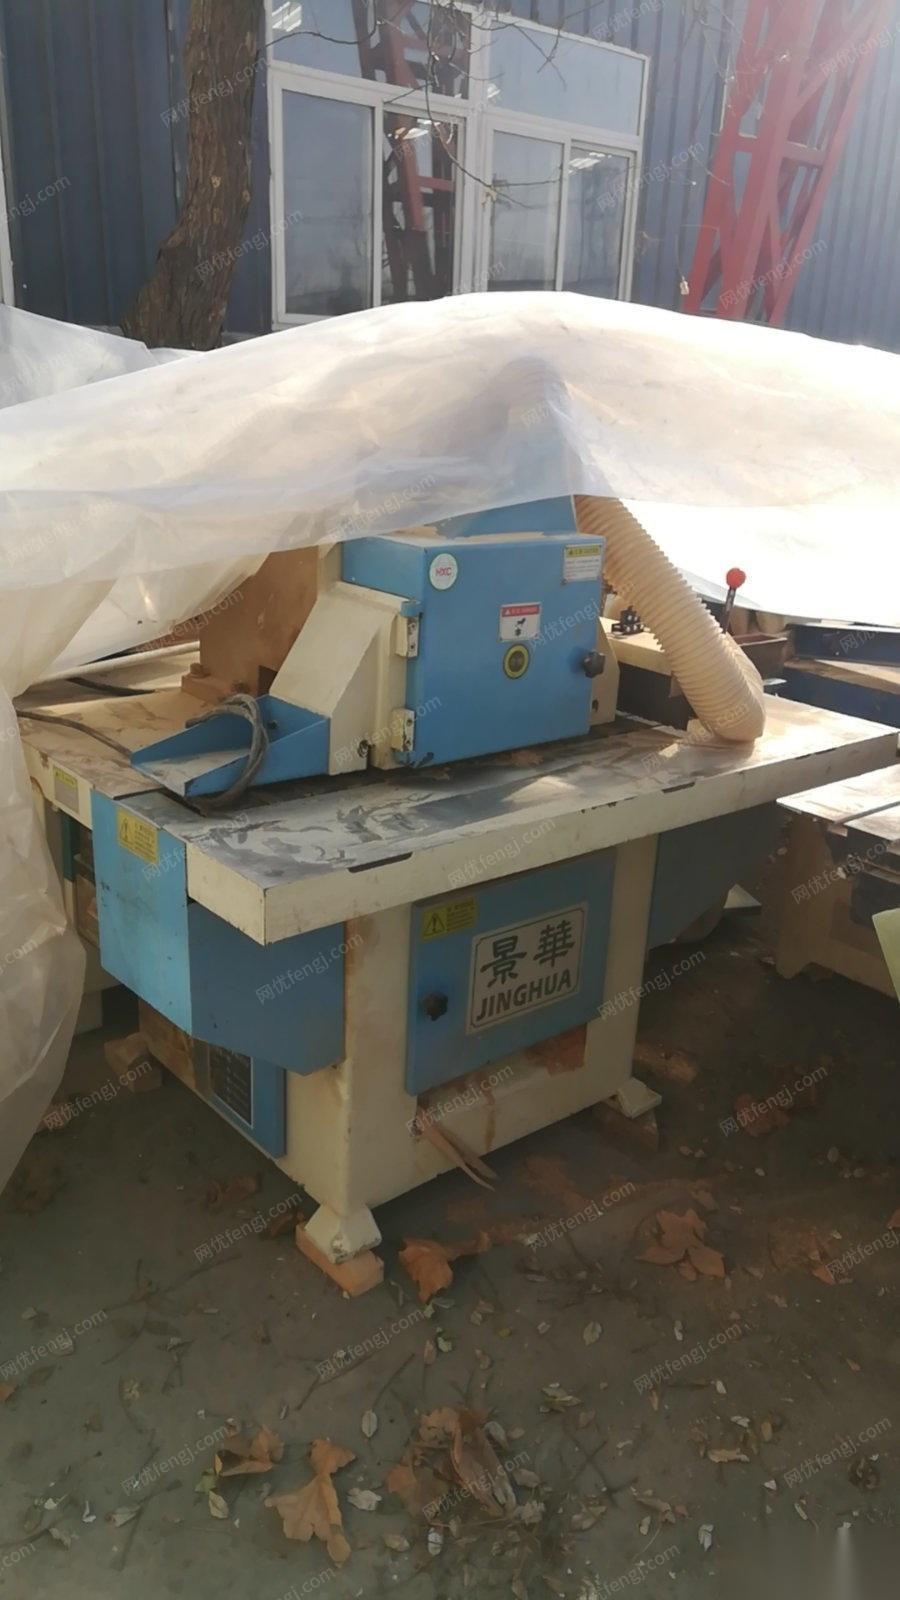 北京房山区厂房搬迁出售全套木工机械,用了五六年,马氏锯,封边机等 看货议价,可单卖.